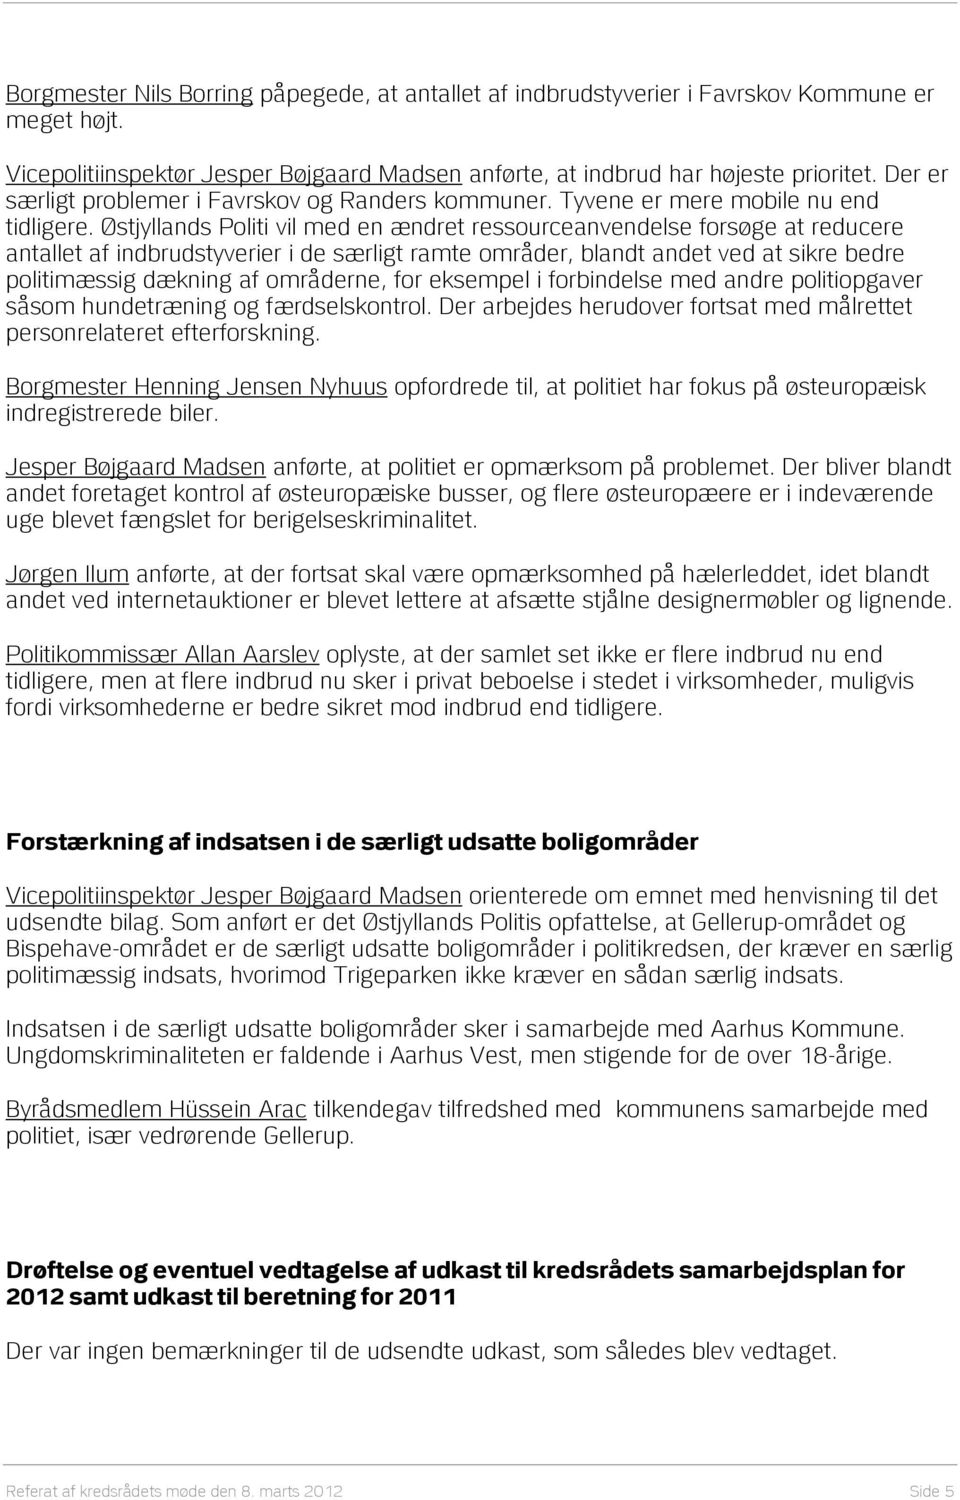 Østjyllands Politi vil med en ændret ressourceanvendelse forsøge at reducere antallet af indbrudstyverier i de særligt ramte områder, blandt andet ved at sikre bedre politimæssig dækning af